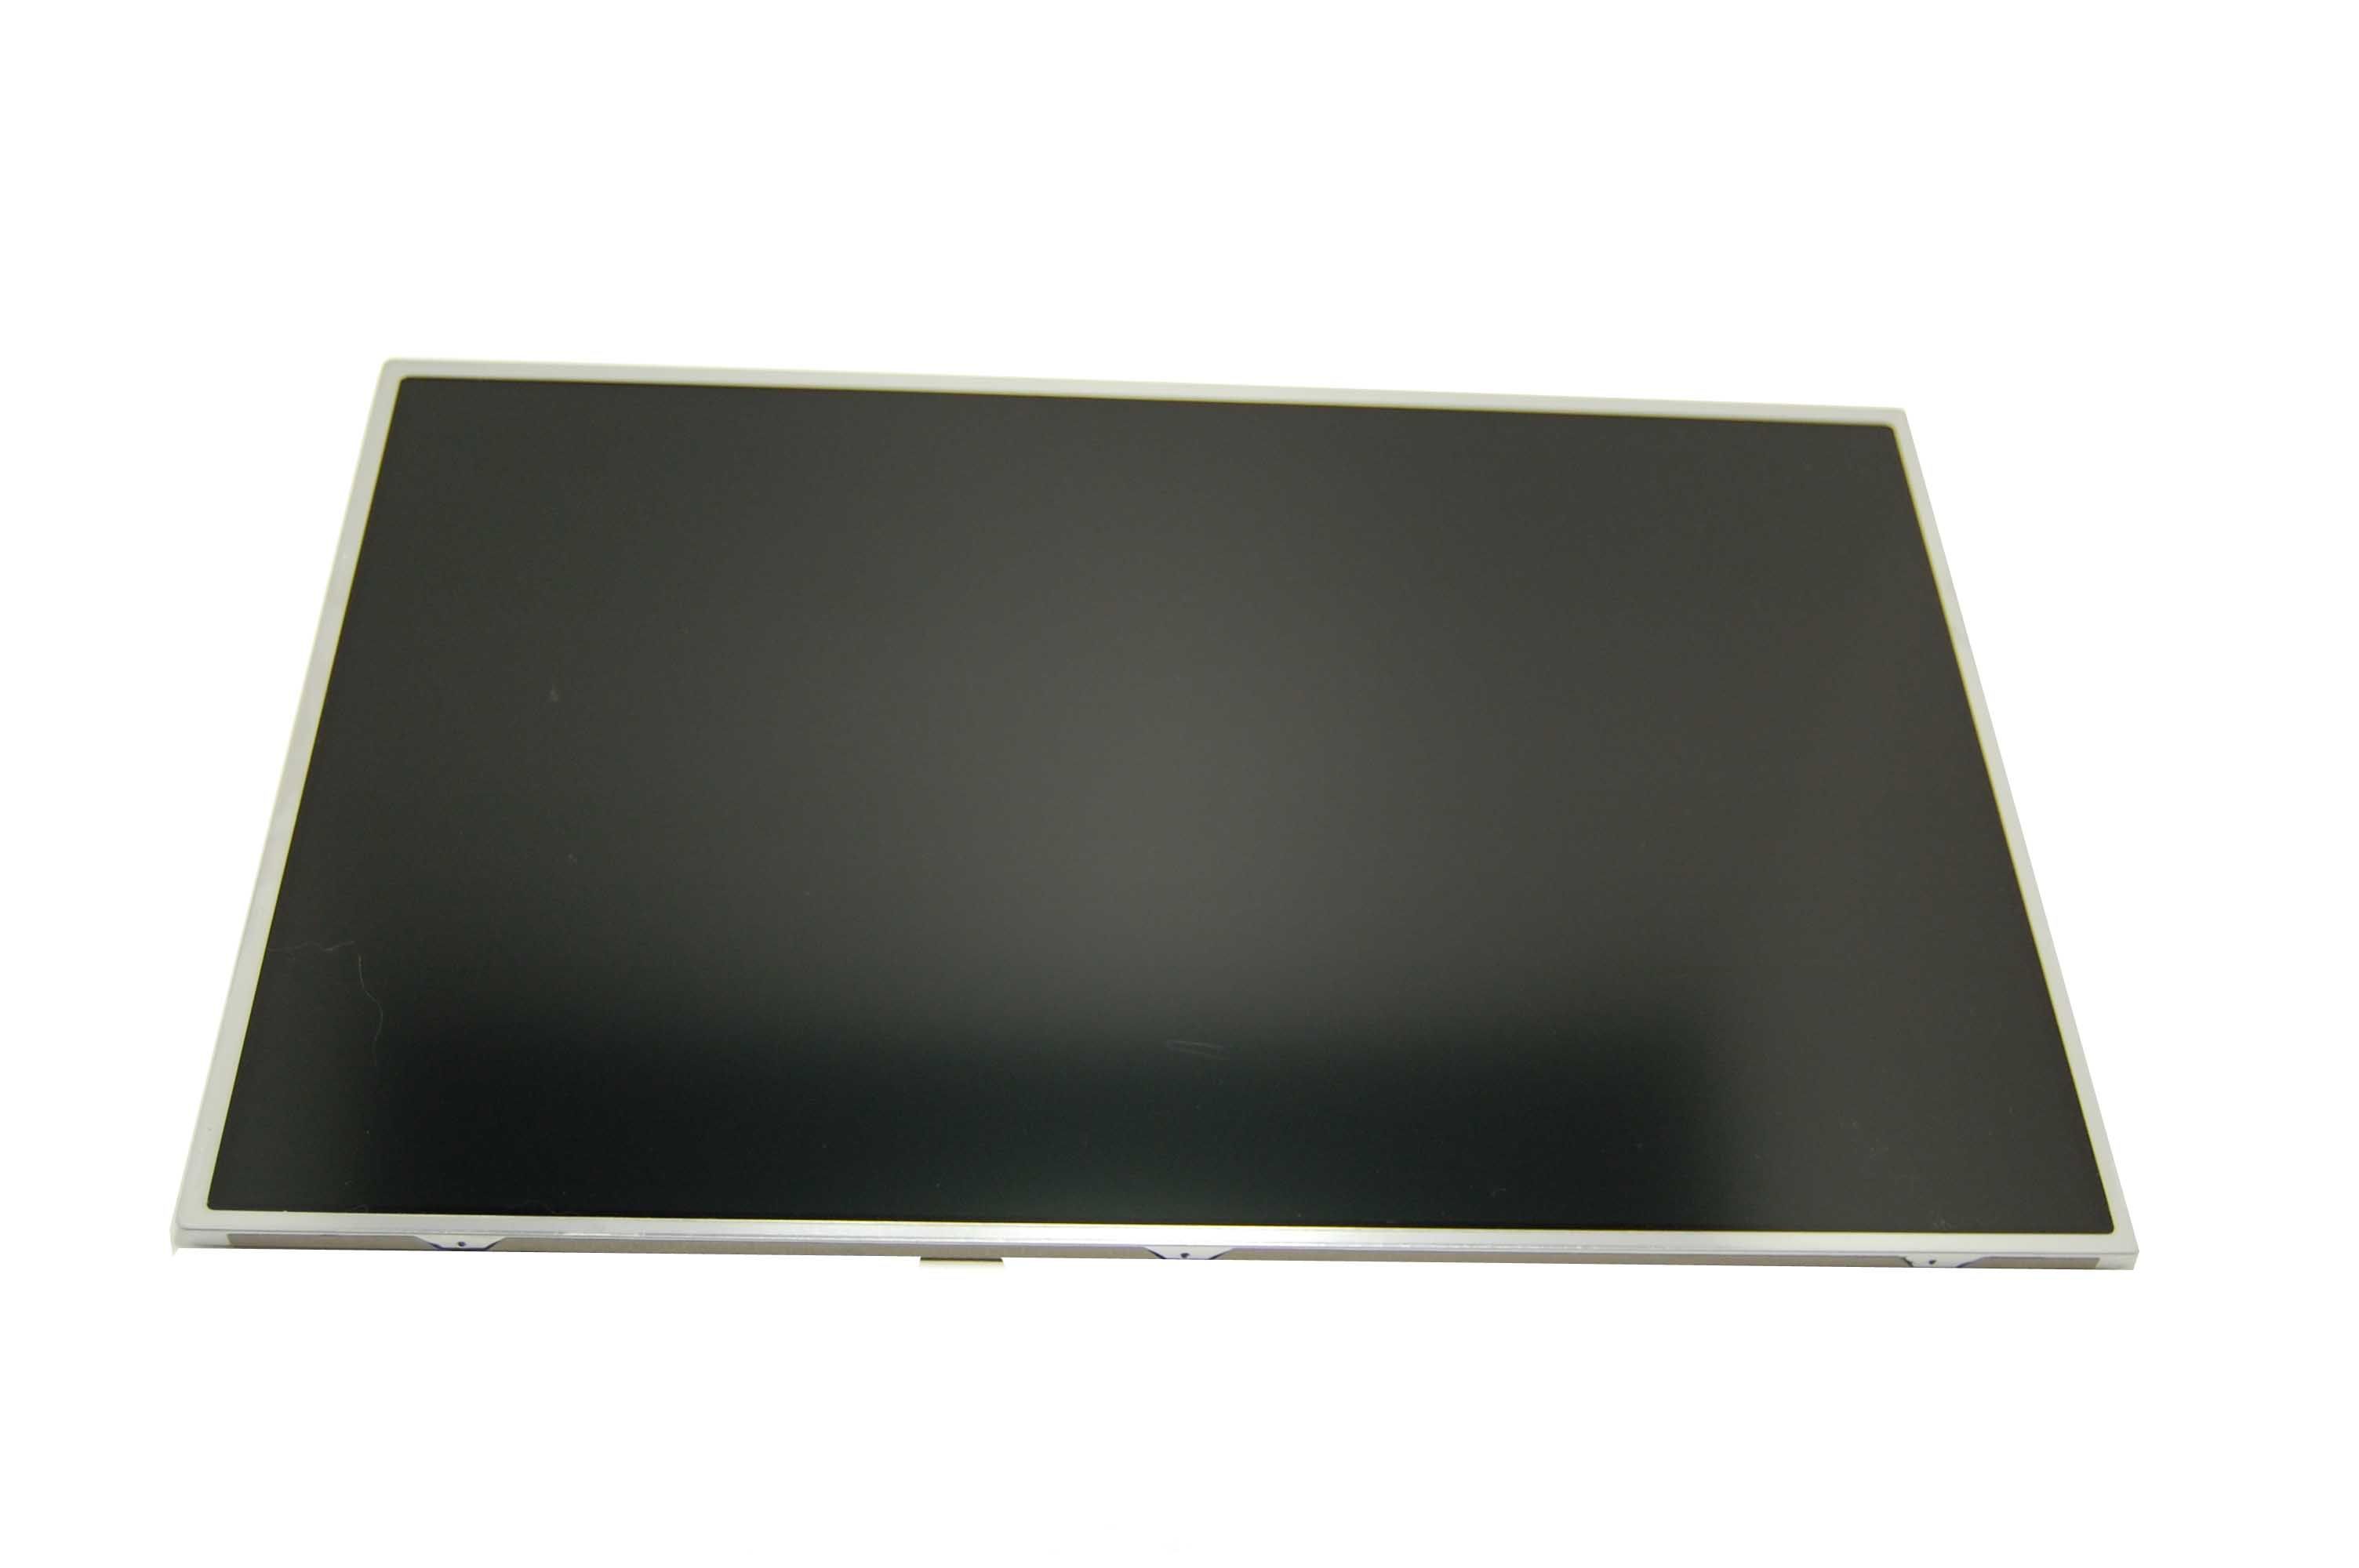 LG LP171WU4 (TL) (A3) Display LCD 17,1" 1920x1200 LED matt